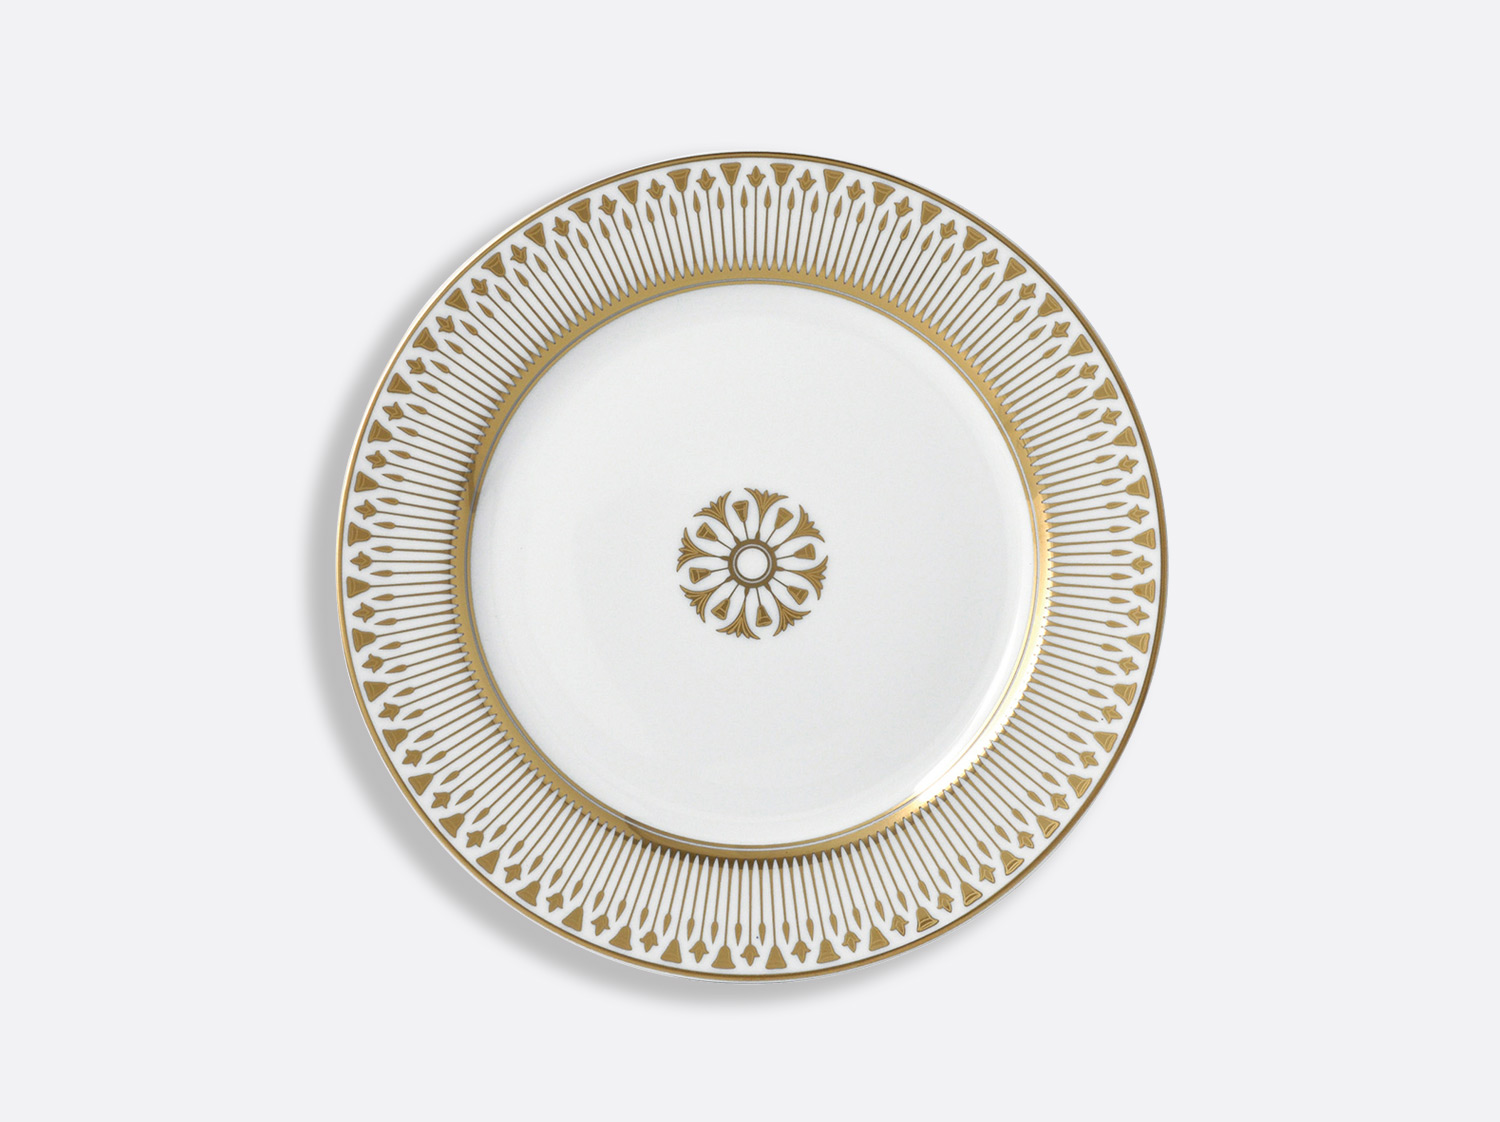 Assiette à dessert 21 cm en porcelaine de la collection Soleil levant Bernardaud